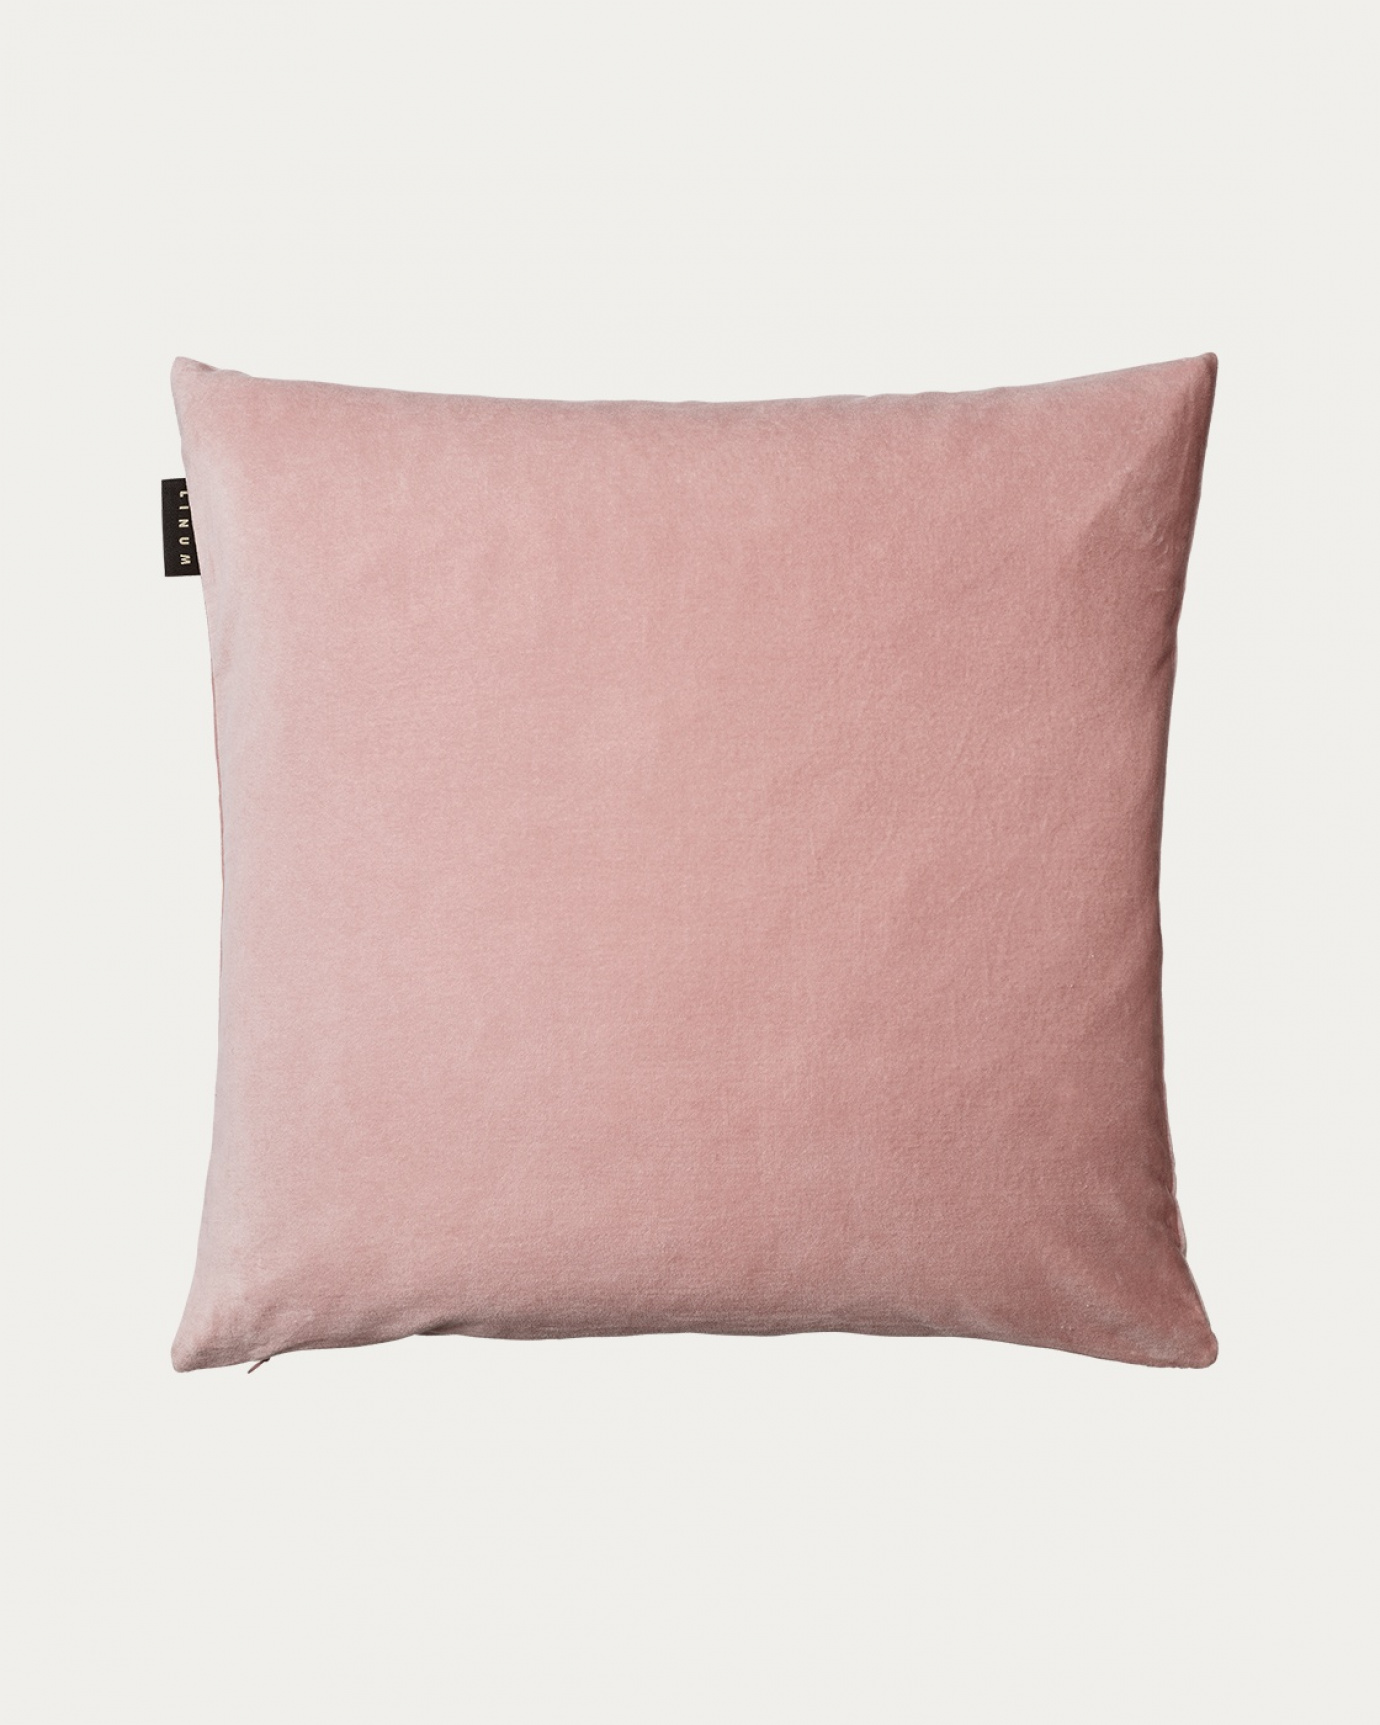 Image du produit housse de coussin PAOLO rose poudré en doux velours de coton de LINUM DESIGN. Taille 50 x 50 cm.